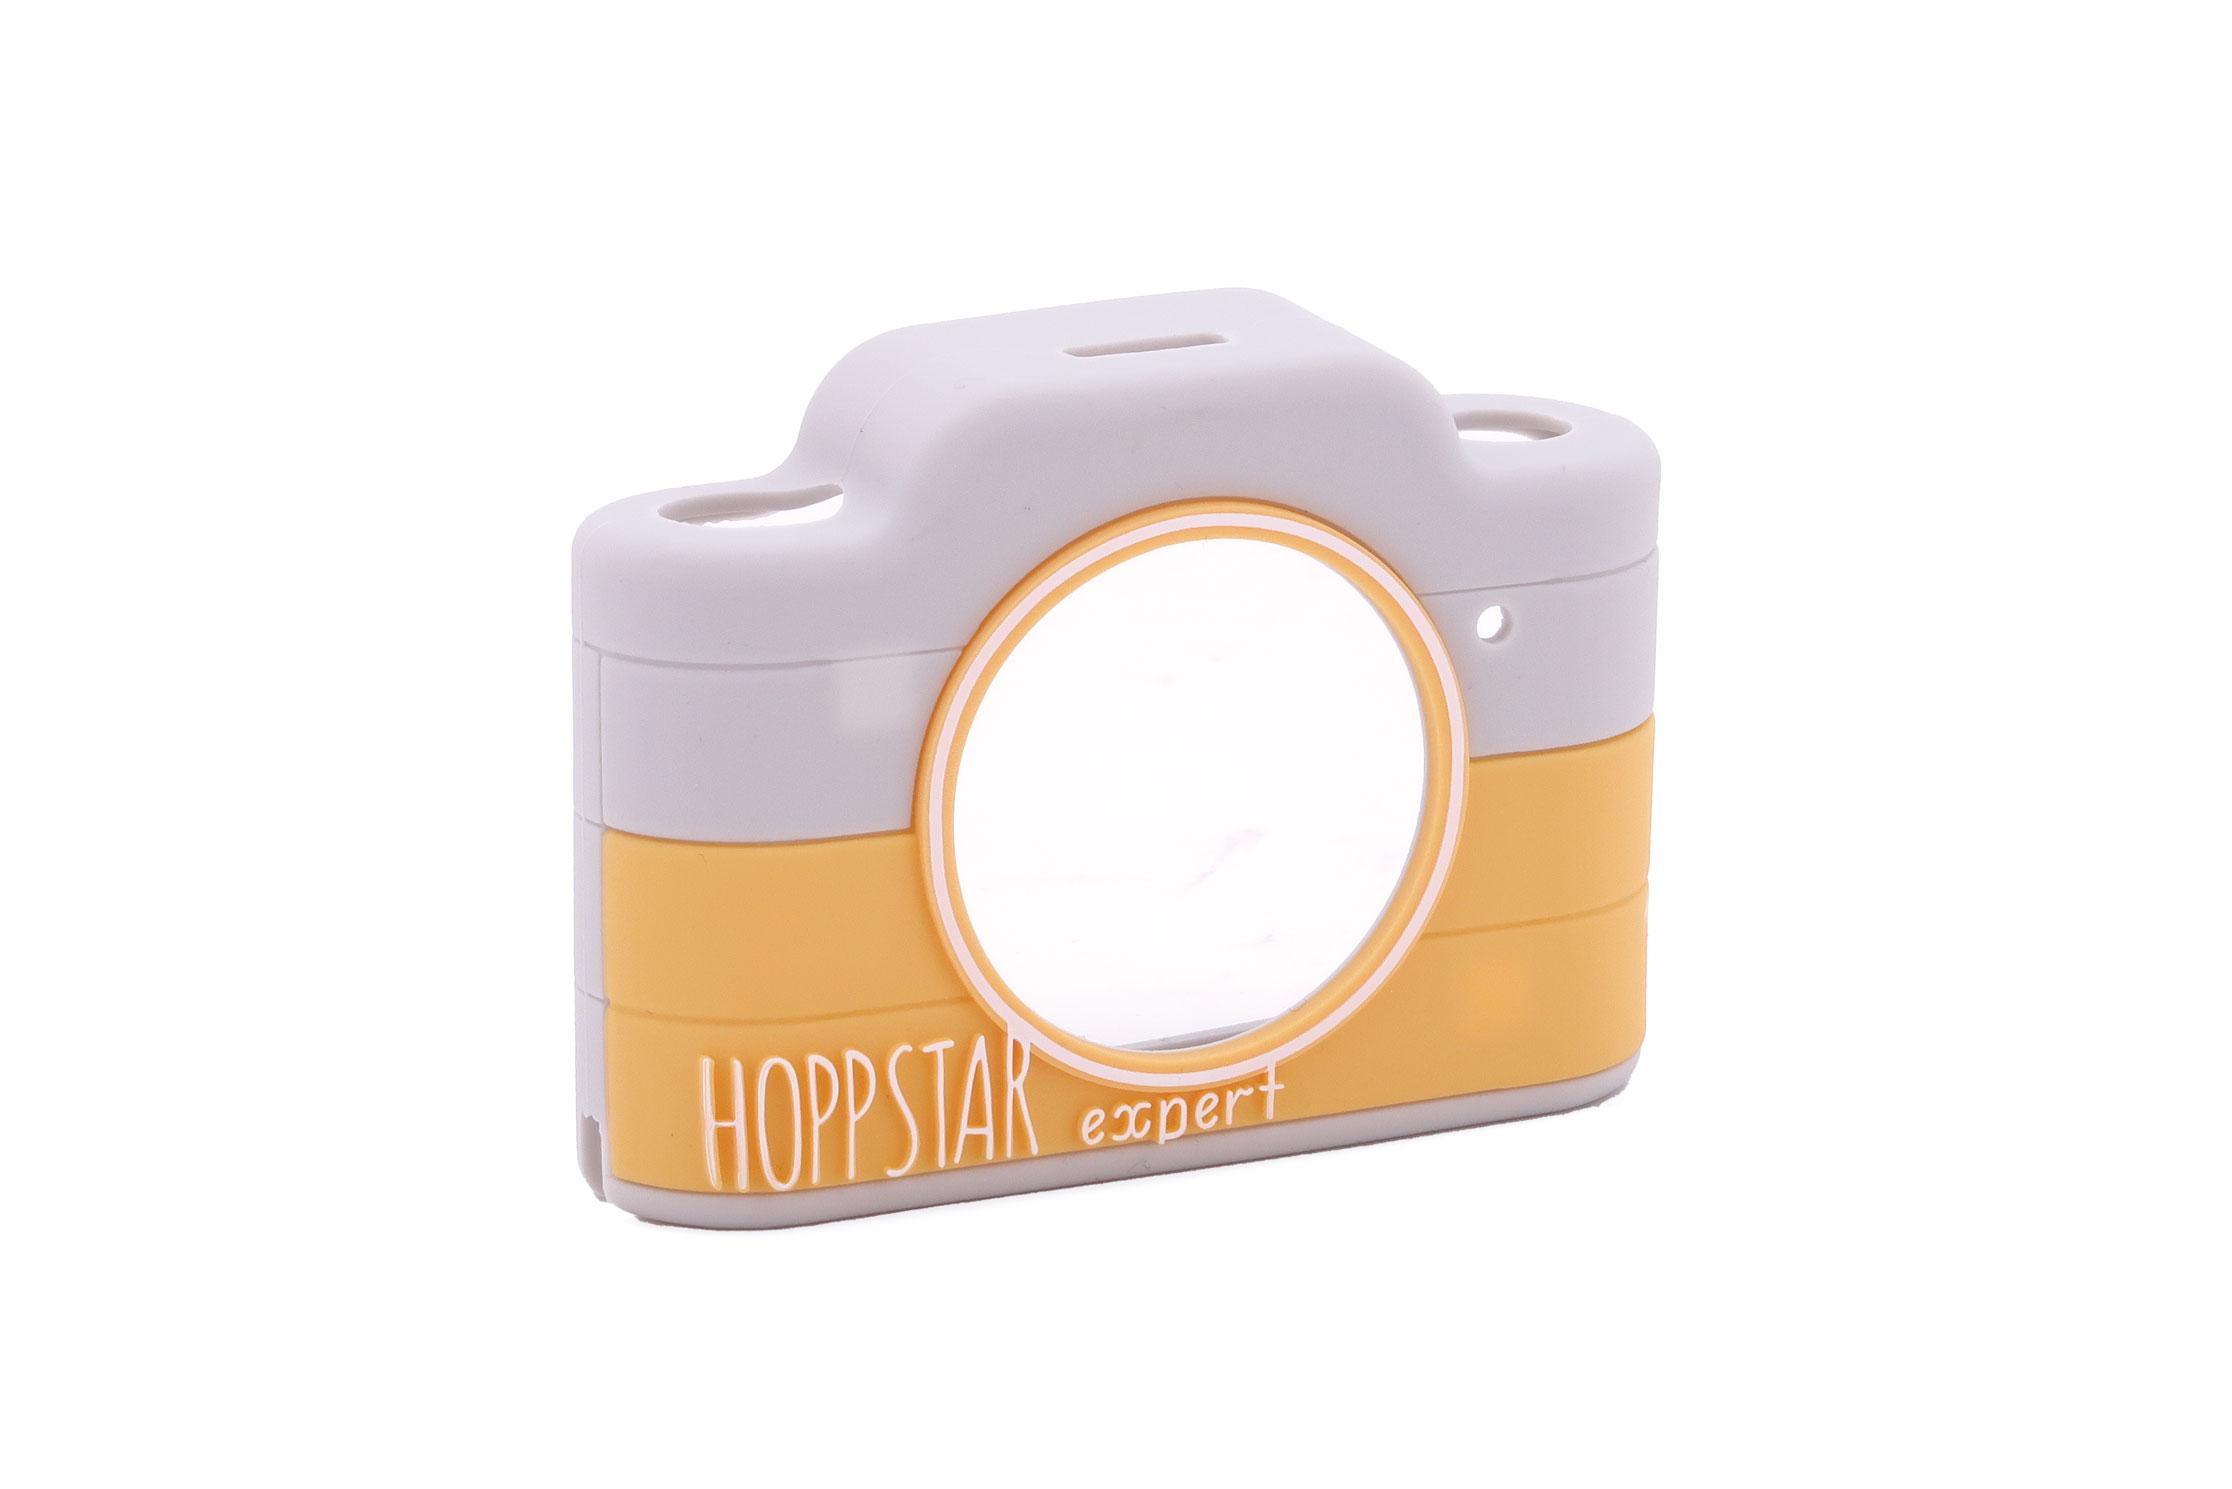 Hoppstar Expert Kamera mit Citron (gelb/weiß) Silikonhülle, Nur Silikonhülle, Ansicht von schräg vorne